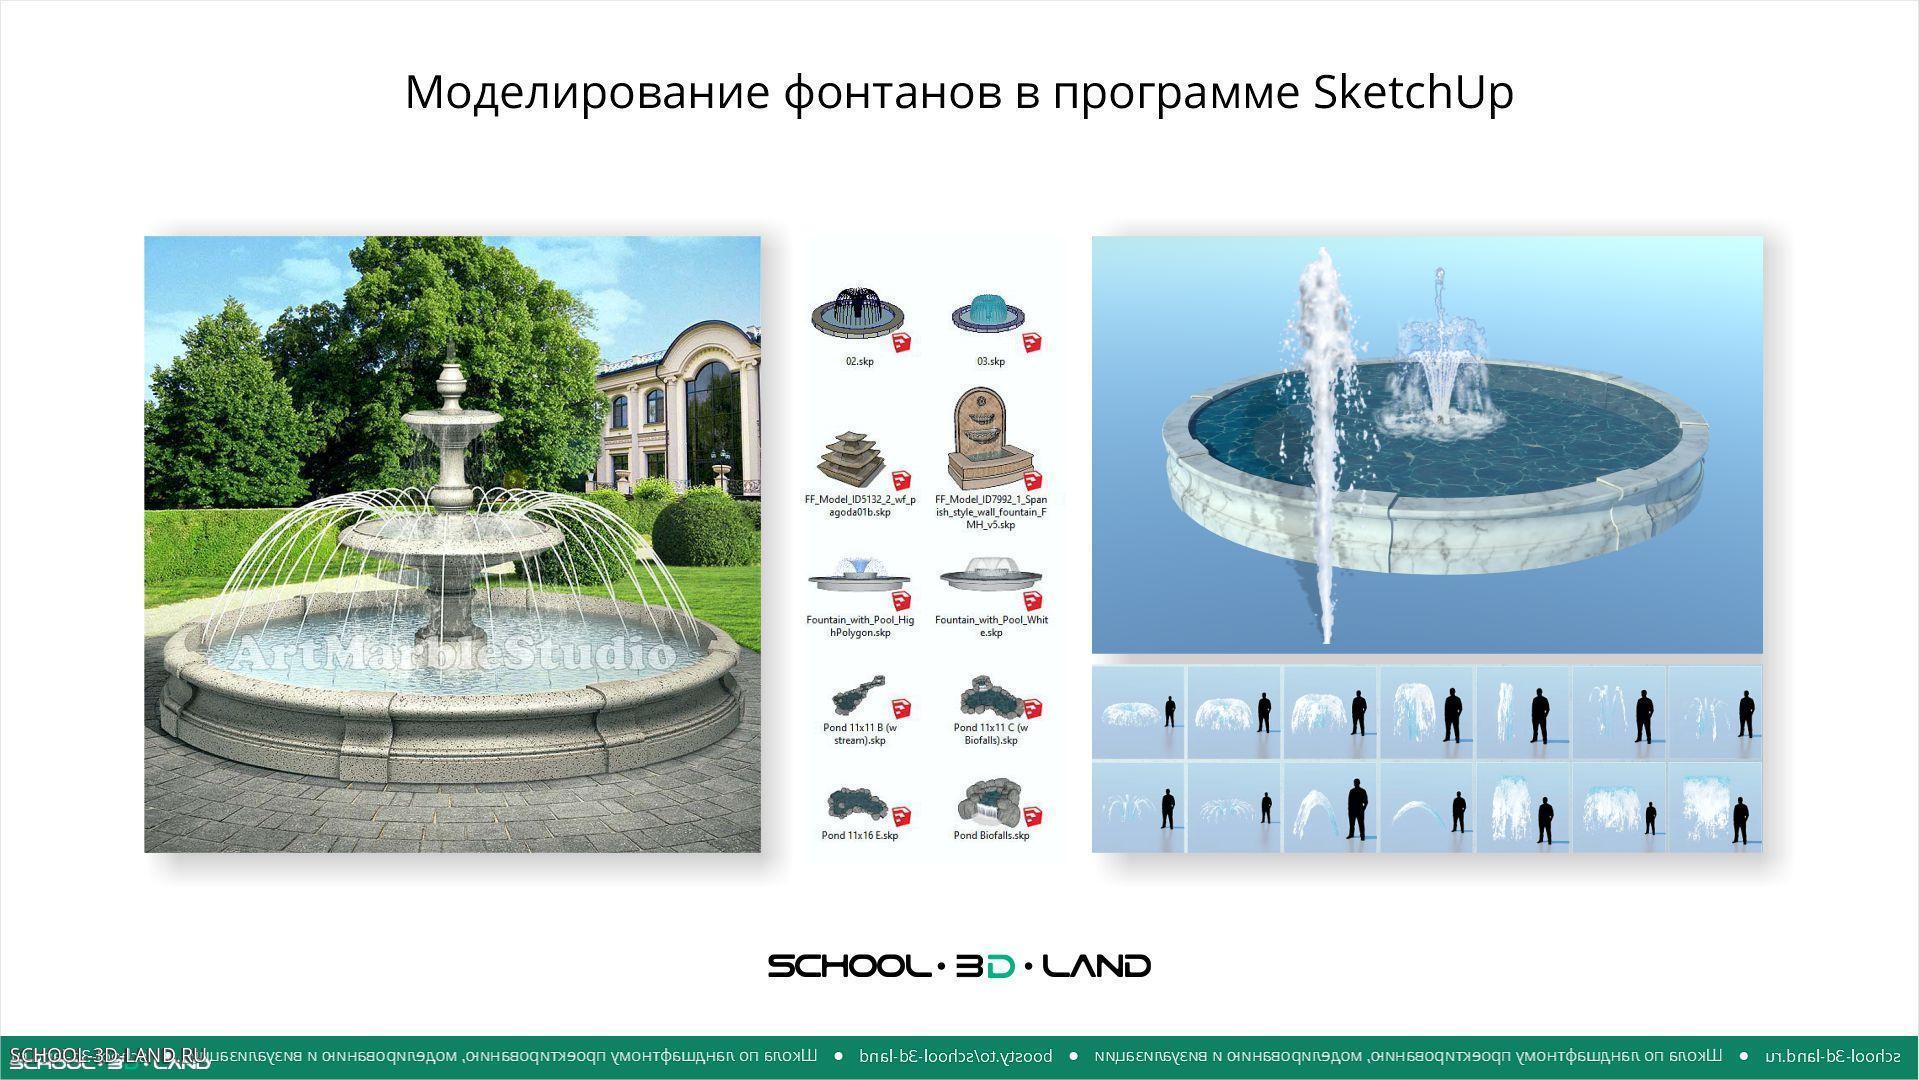 Моделирование фонтанов и воды в программе SketchUp. Части 1-2